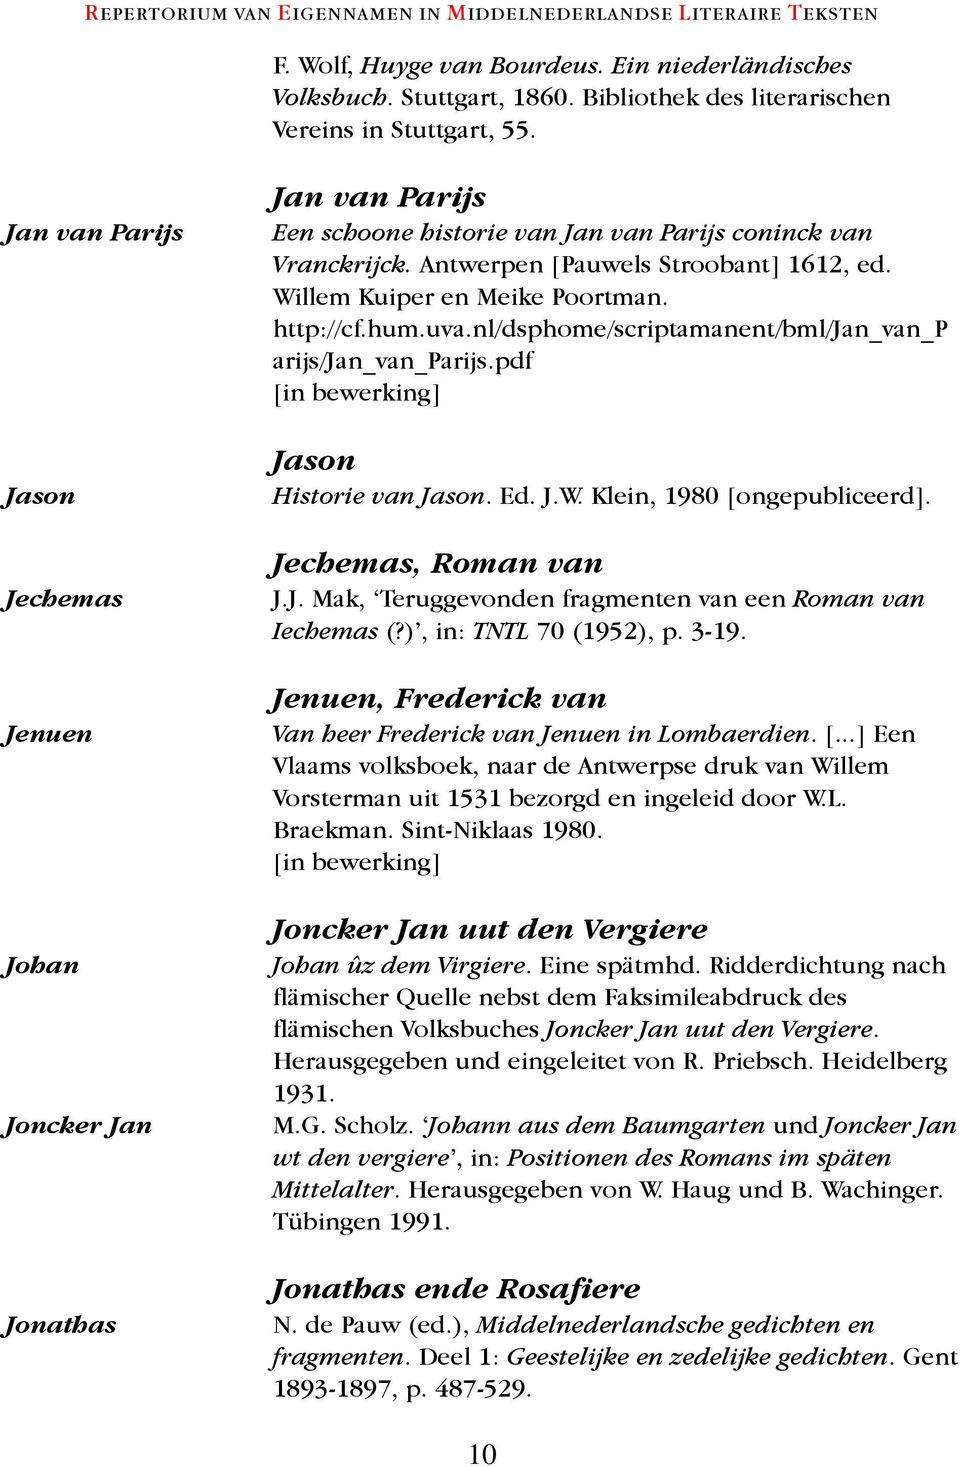 Willem Kuiper en Meike Poortman. http://cf.hum.uva.nl/dsphome/scriptamanent/bml/jan_van_p arijs/jan_van_parijs.pdf Jason Historie van Jason. Ed. J.W. Klein, 1980 [ongepubliceerd].